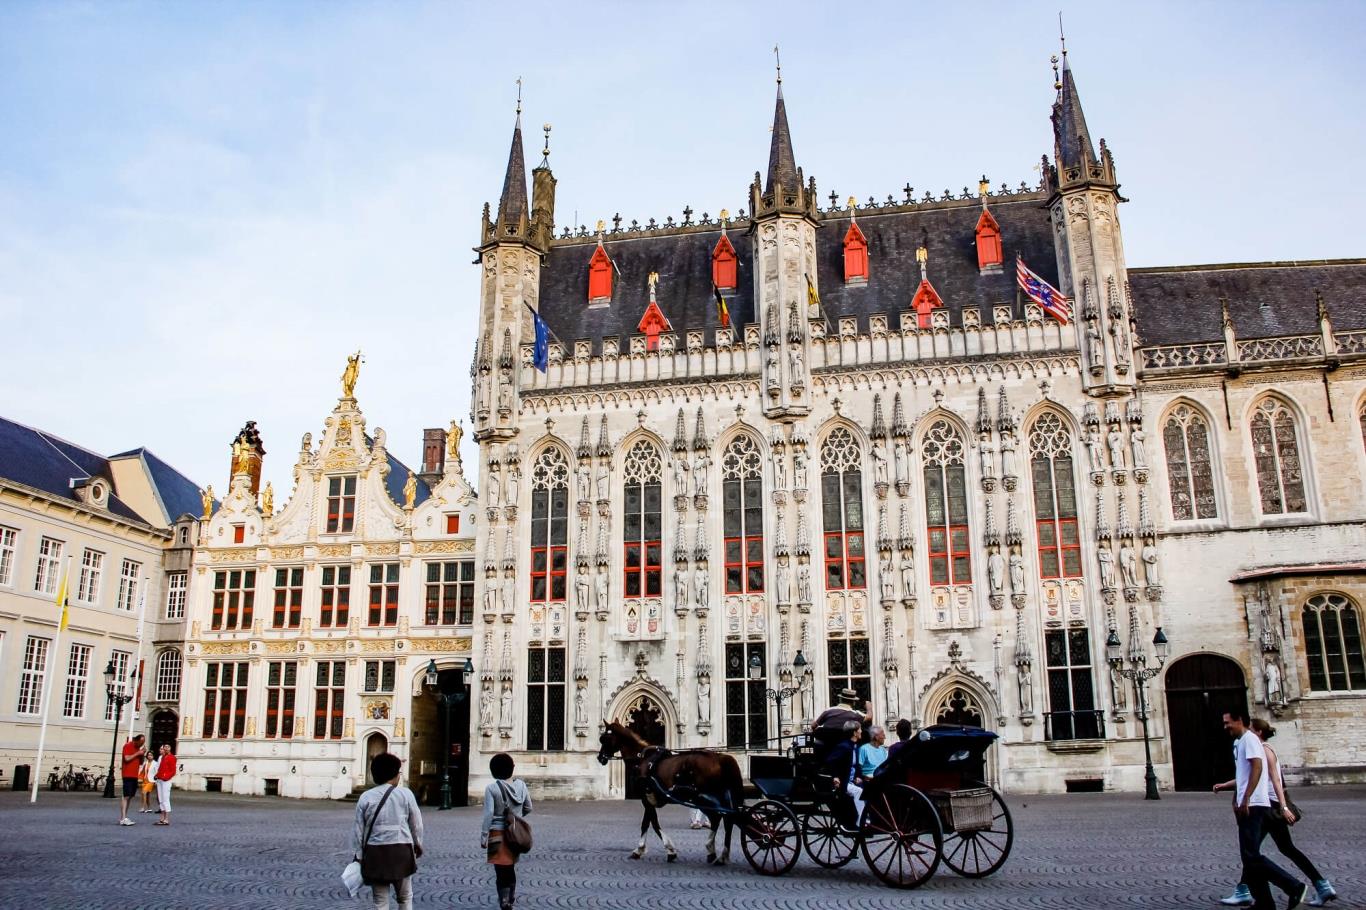 Đến với thành phố Bruges mang vẻ đẹp tựa Venice của Bắc Âu